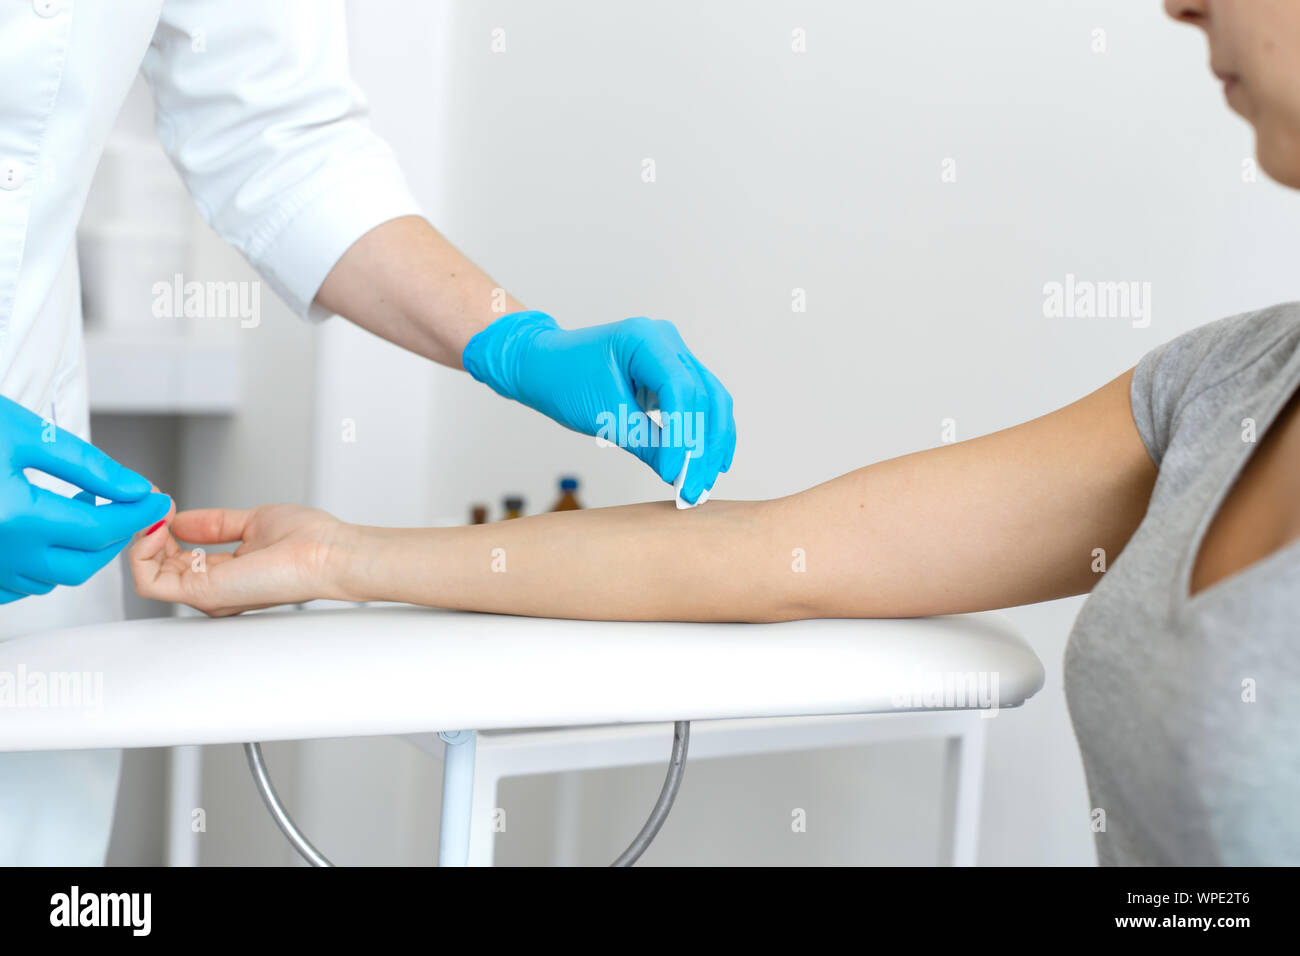 La enfermera roza la mano con alcohol antes de tomar sangre de una vena,  usualmente para pruebas. Desinfecta el lugar de introducción de una aguja  con un antiséptico Fotografía de stock -